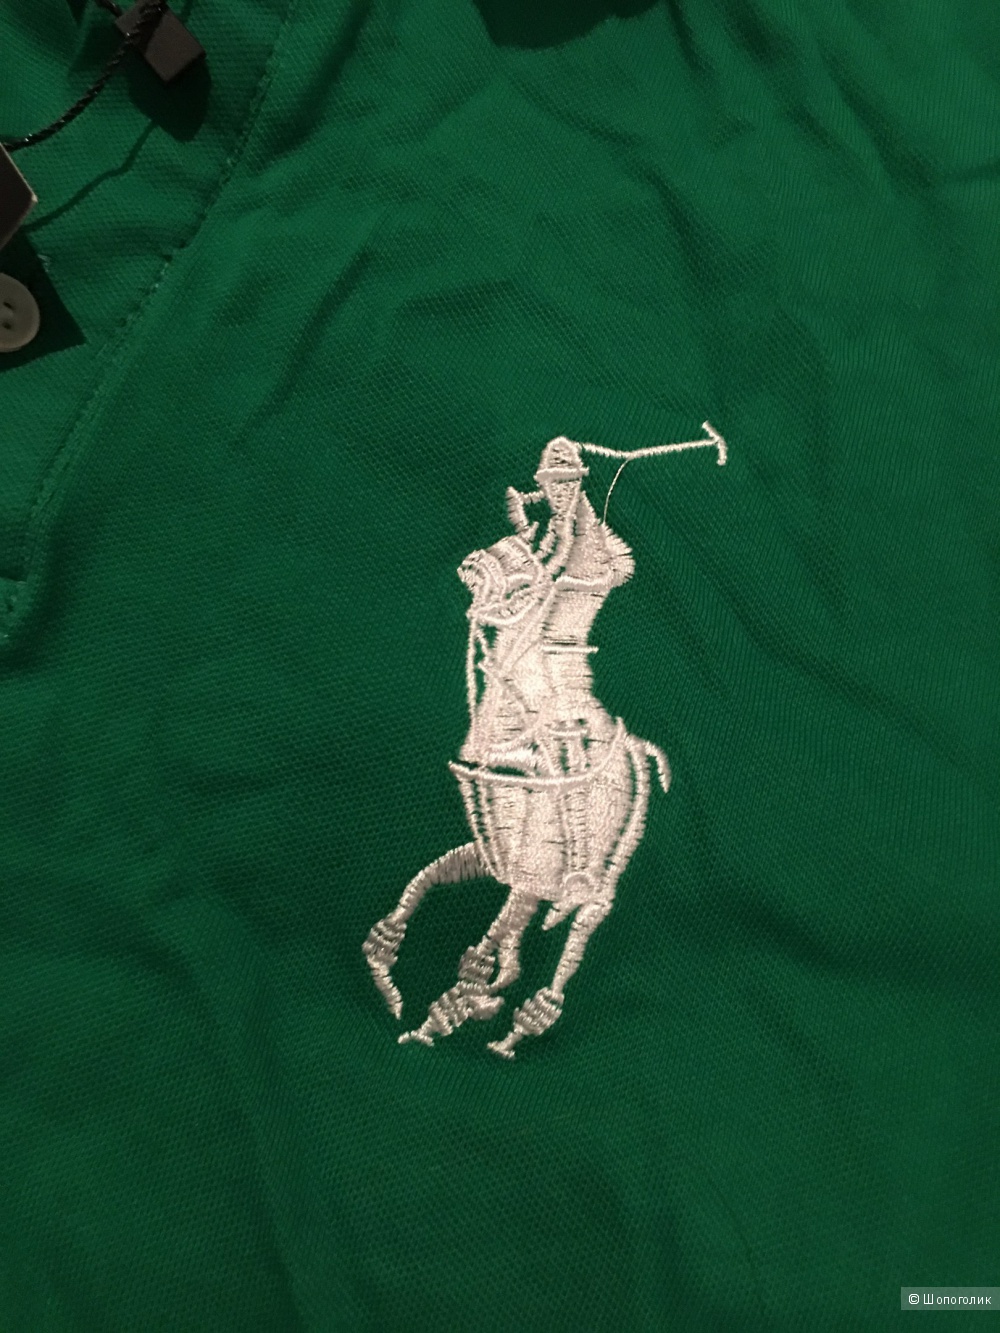 Мужская футболка, ralph lauren,цвет зеленый,размер XL, маломерит, копия,новая!